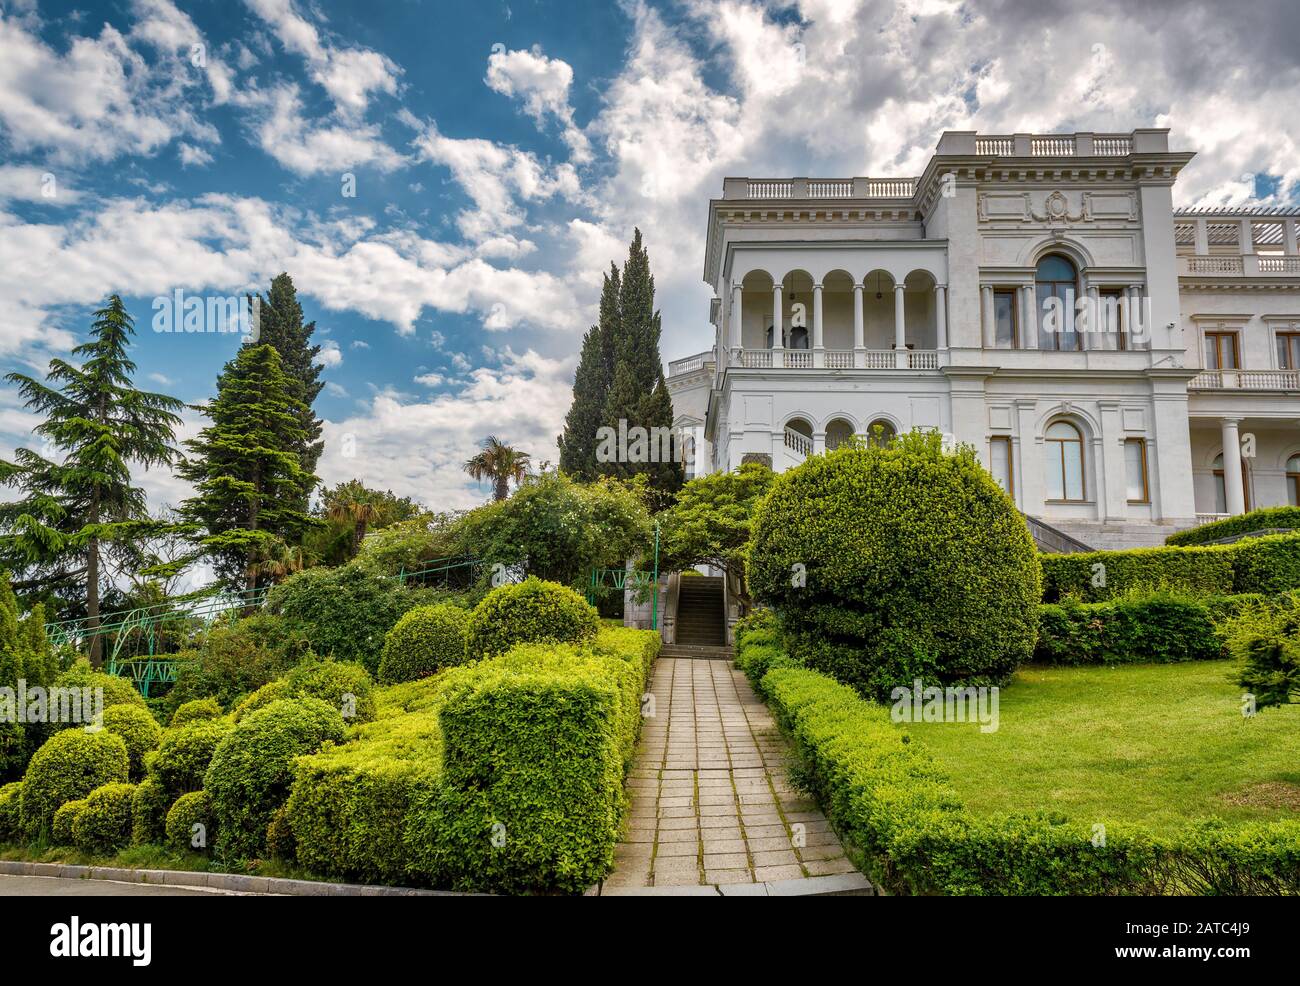 Yalta, RUSSIA - 17 MAGGIO 2016: Palazzo Livadia in Crimea. Livadia Palace è stato un rifugio estivo dell'ultimo zar russo, Nicholas II La Conferenc Di Yalta Foto Stock